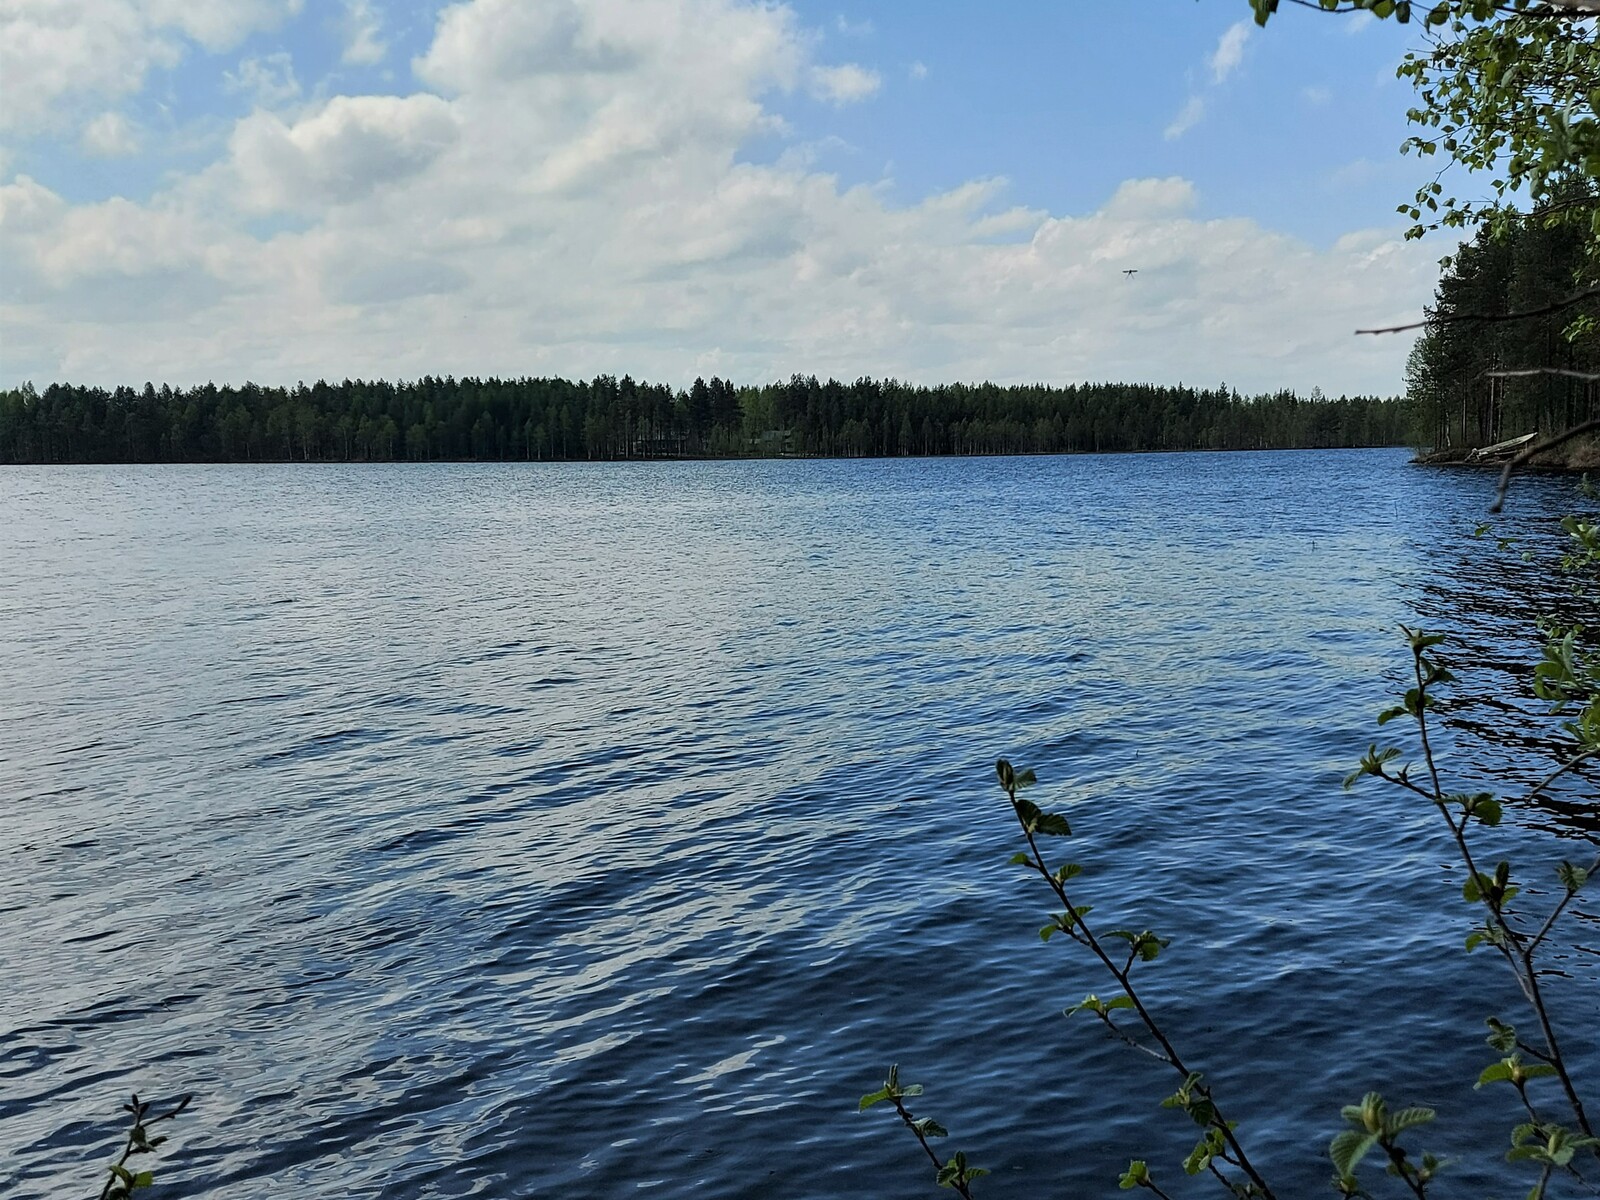 Näkymä järvelle, jossa näkyy vastaranta. Kuvan edustalla koivu.